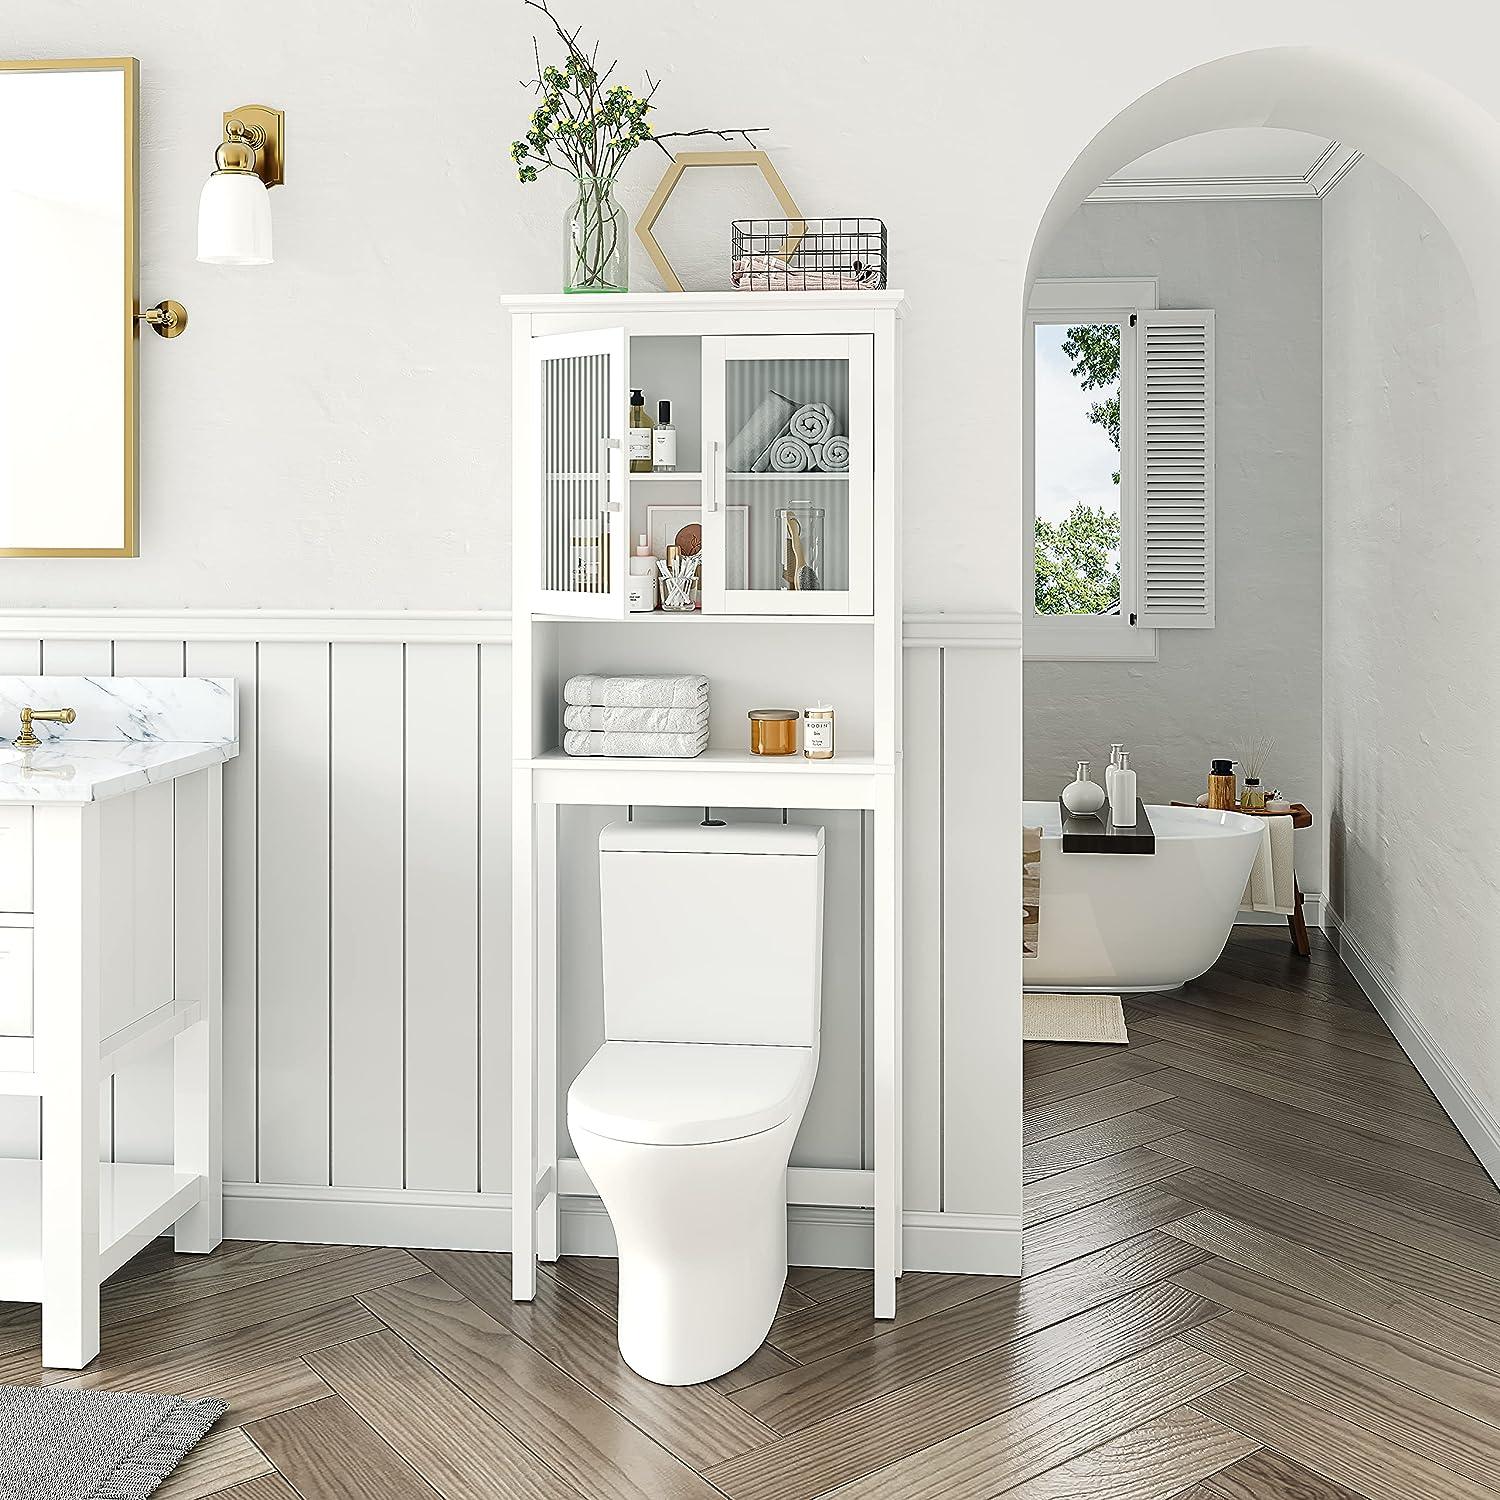 Pasos para armar un mueble de baño – The Home Depot Blog